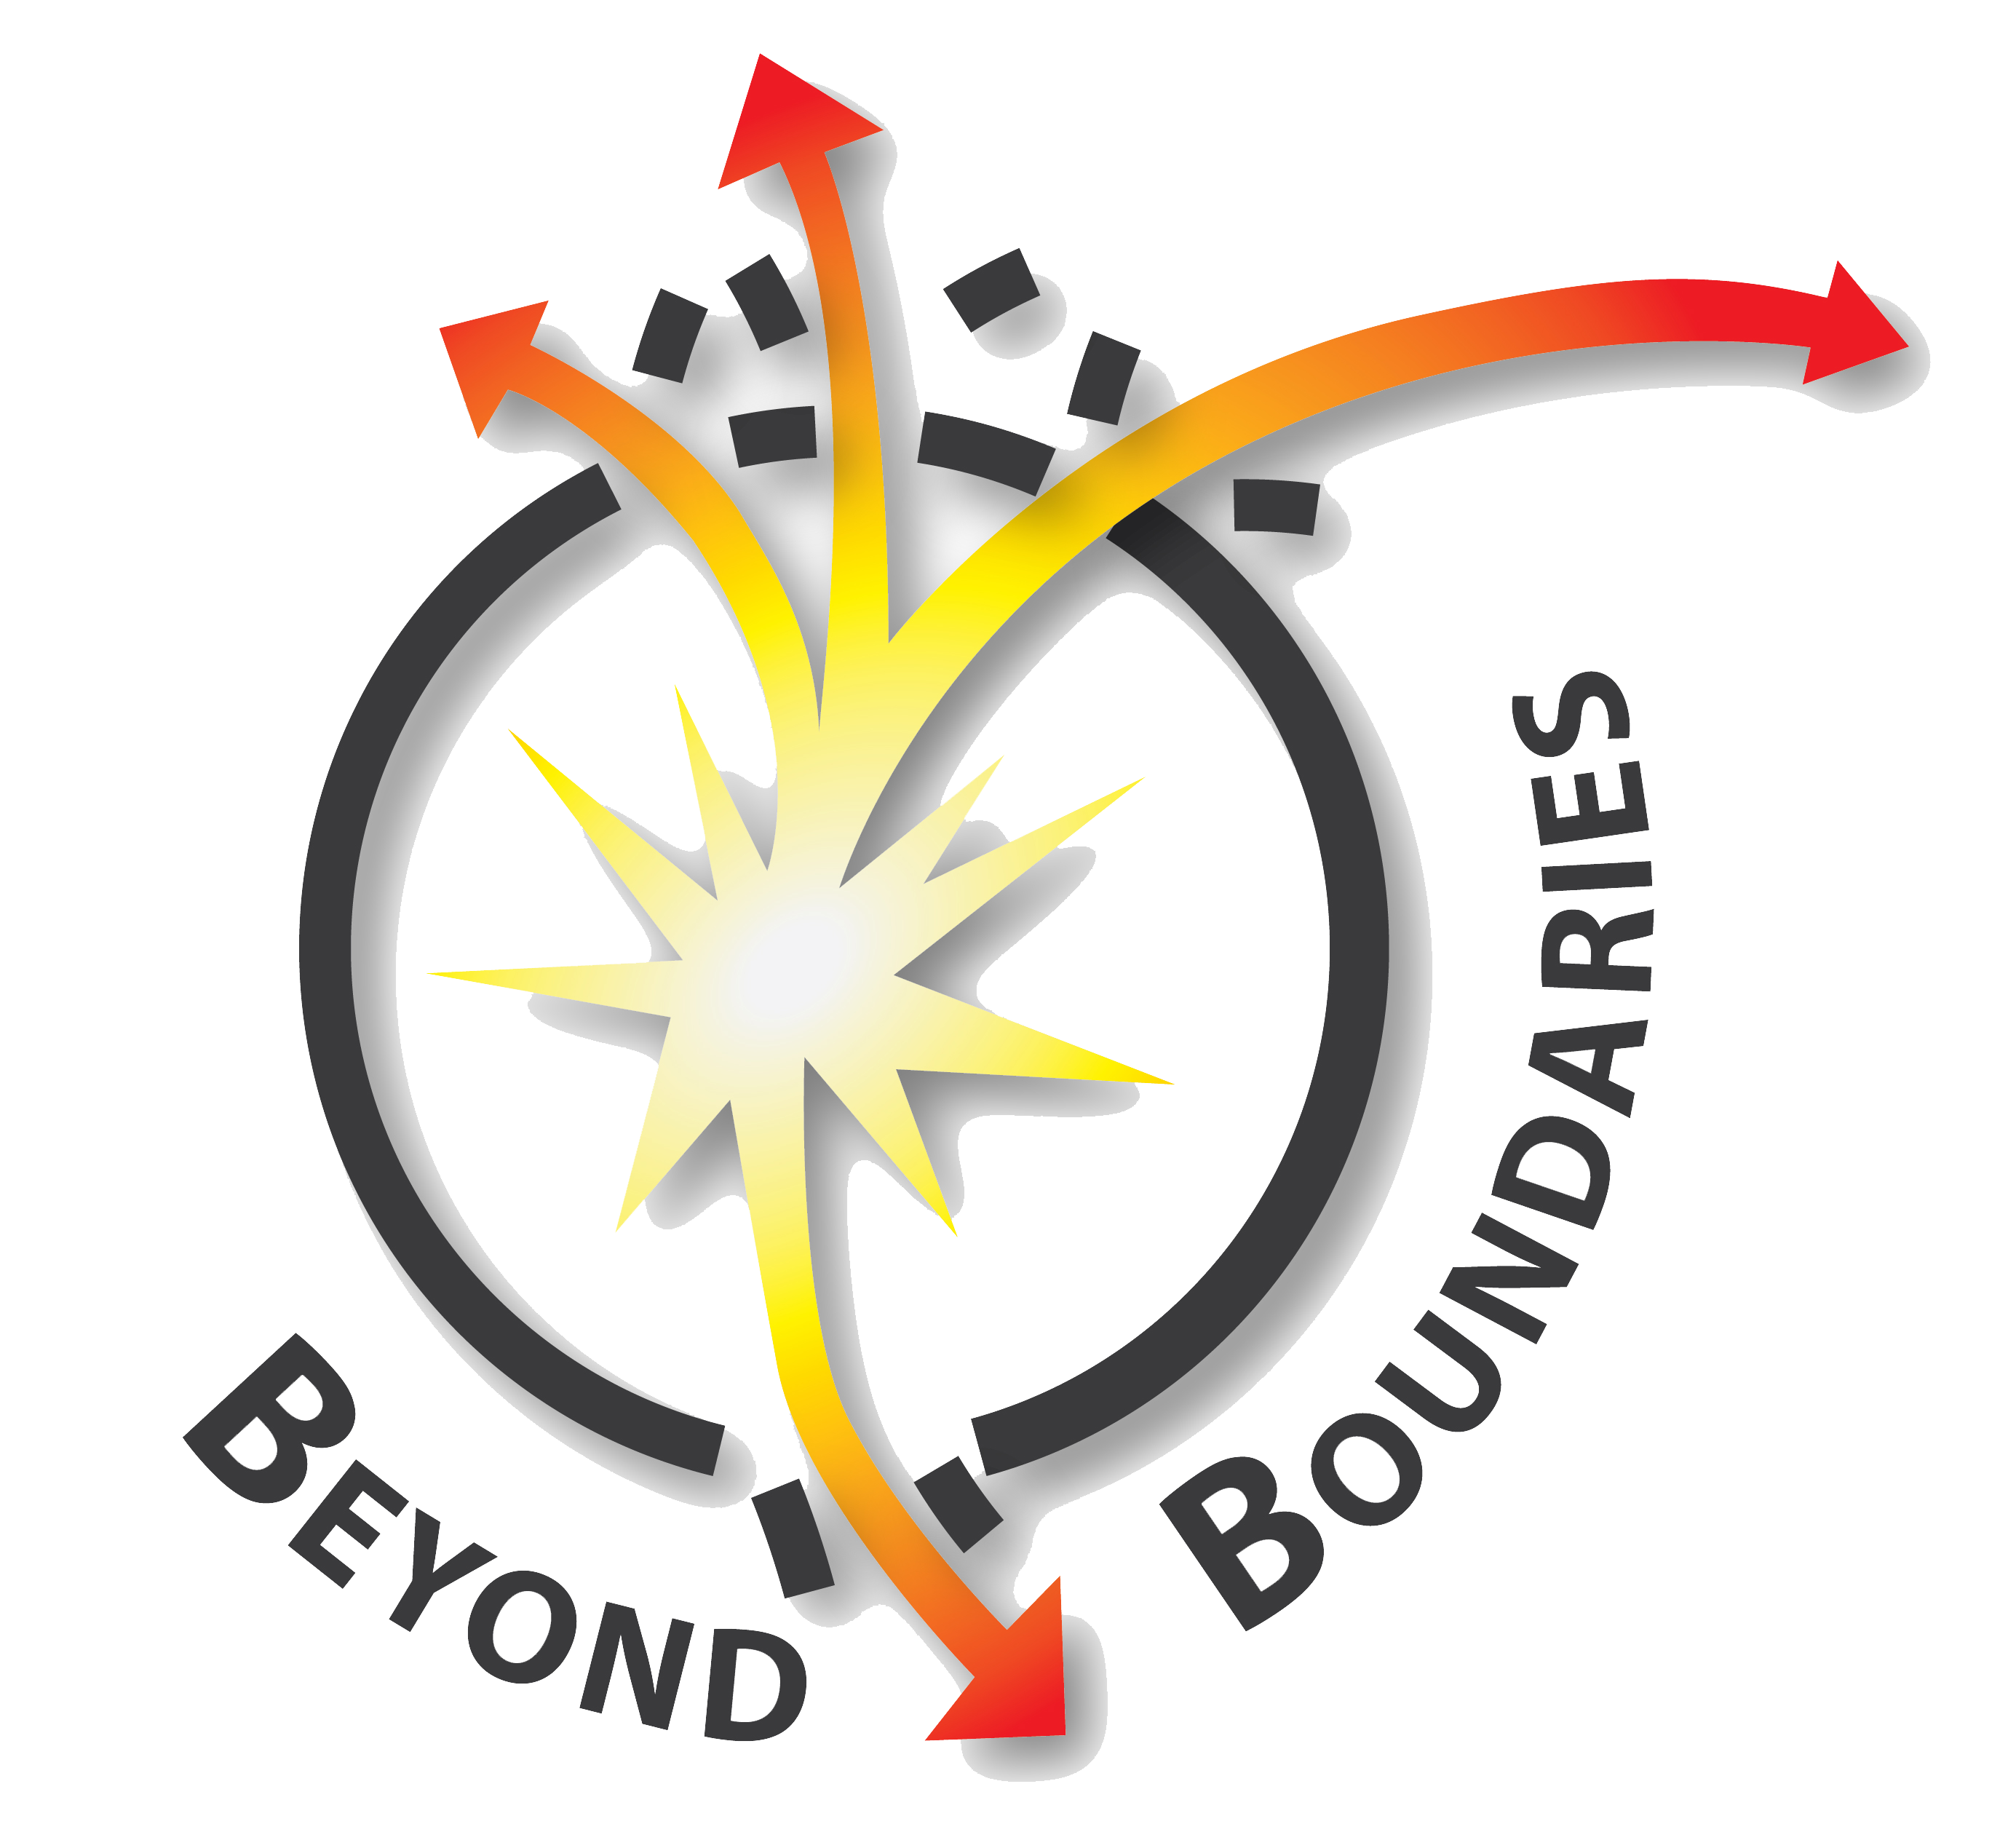 Beyond boundaries logo